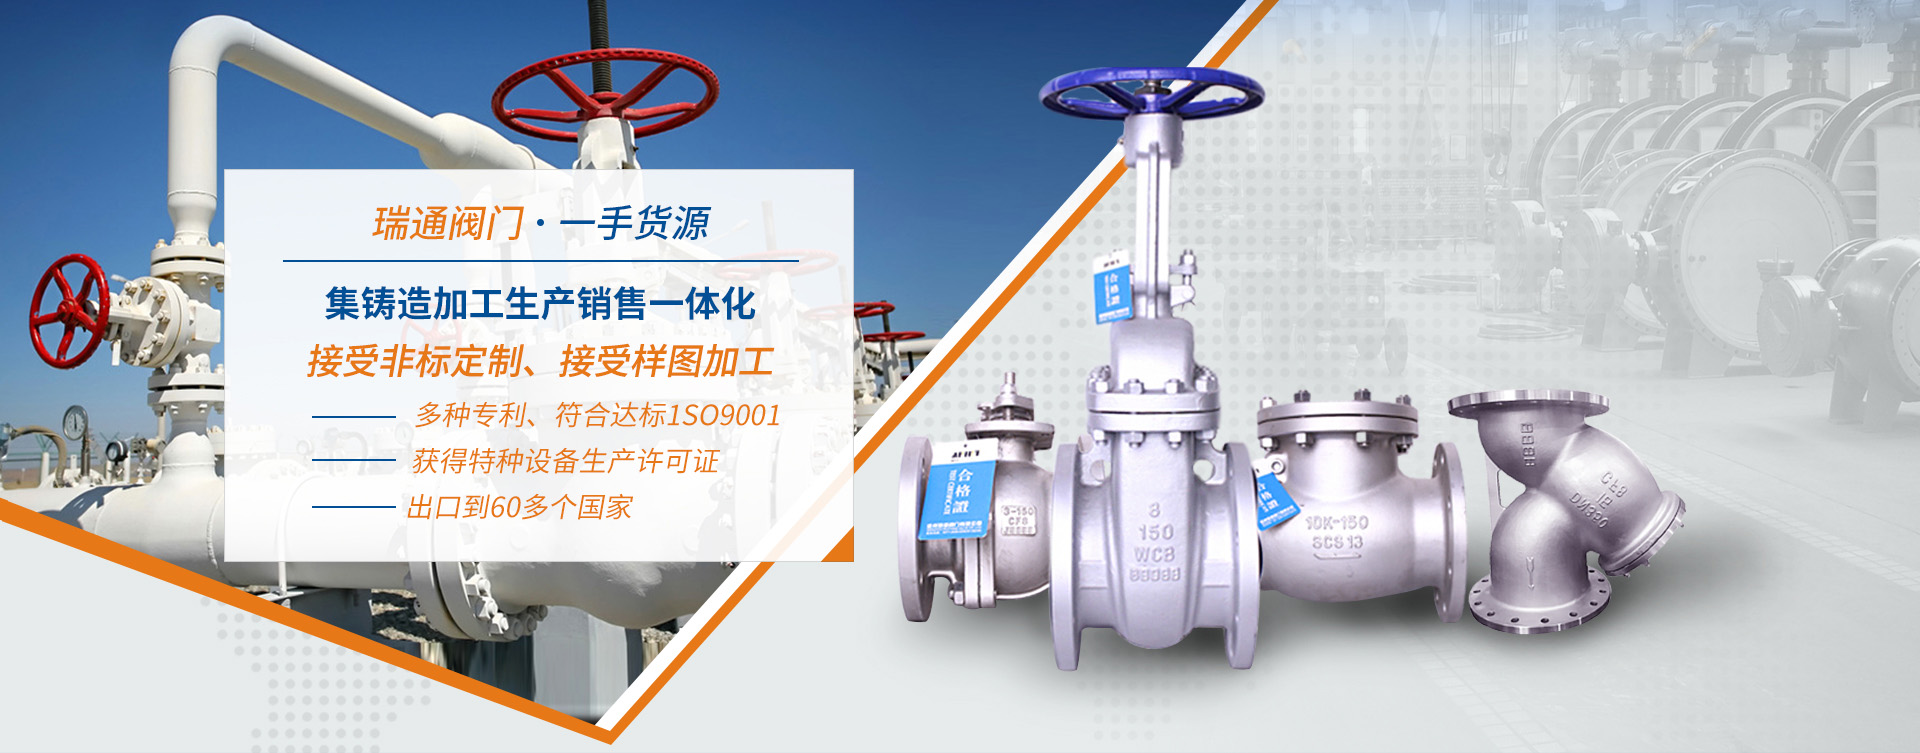 Zhejiang rutong valve co., LTD. 